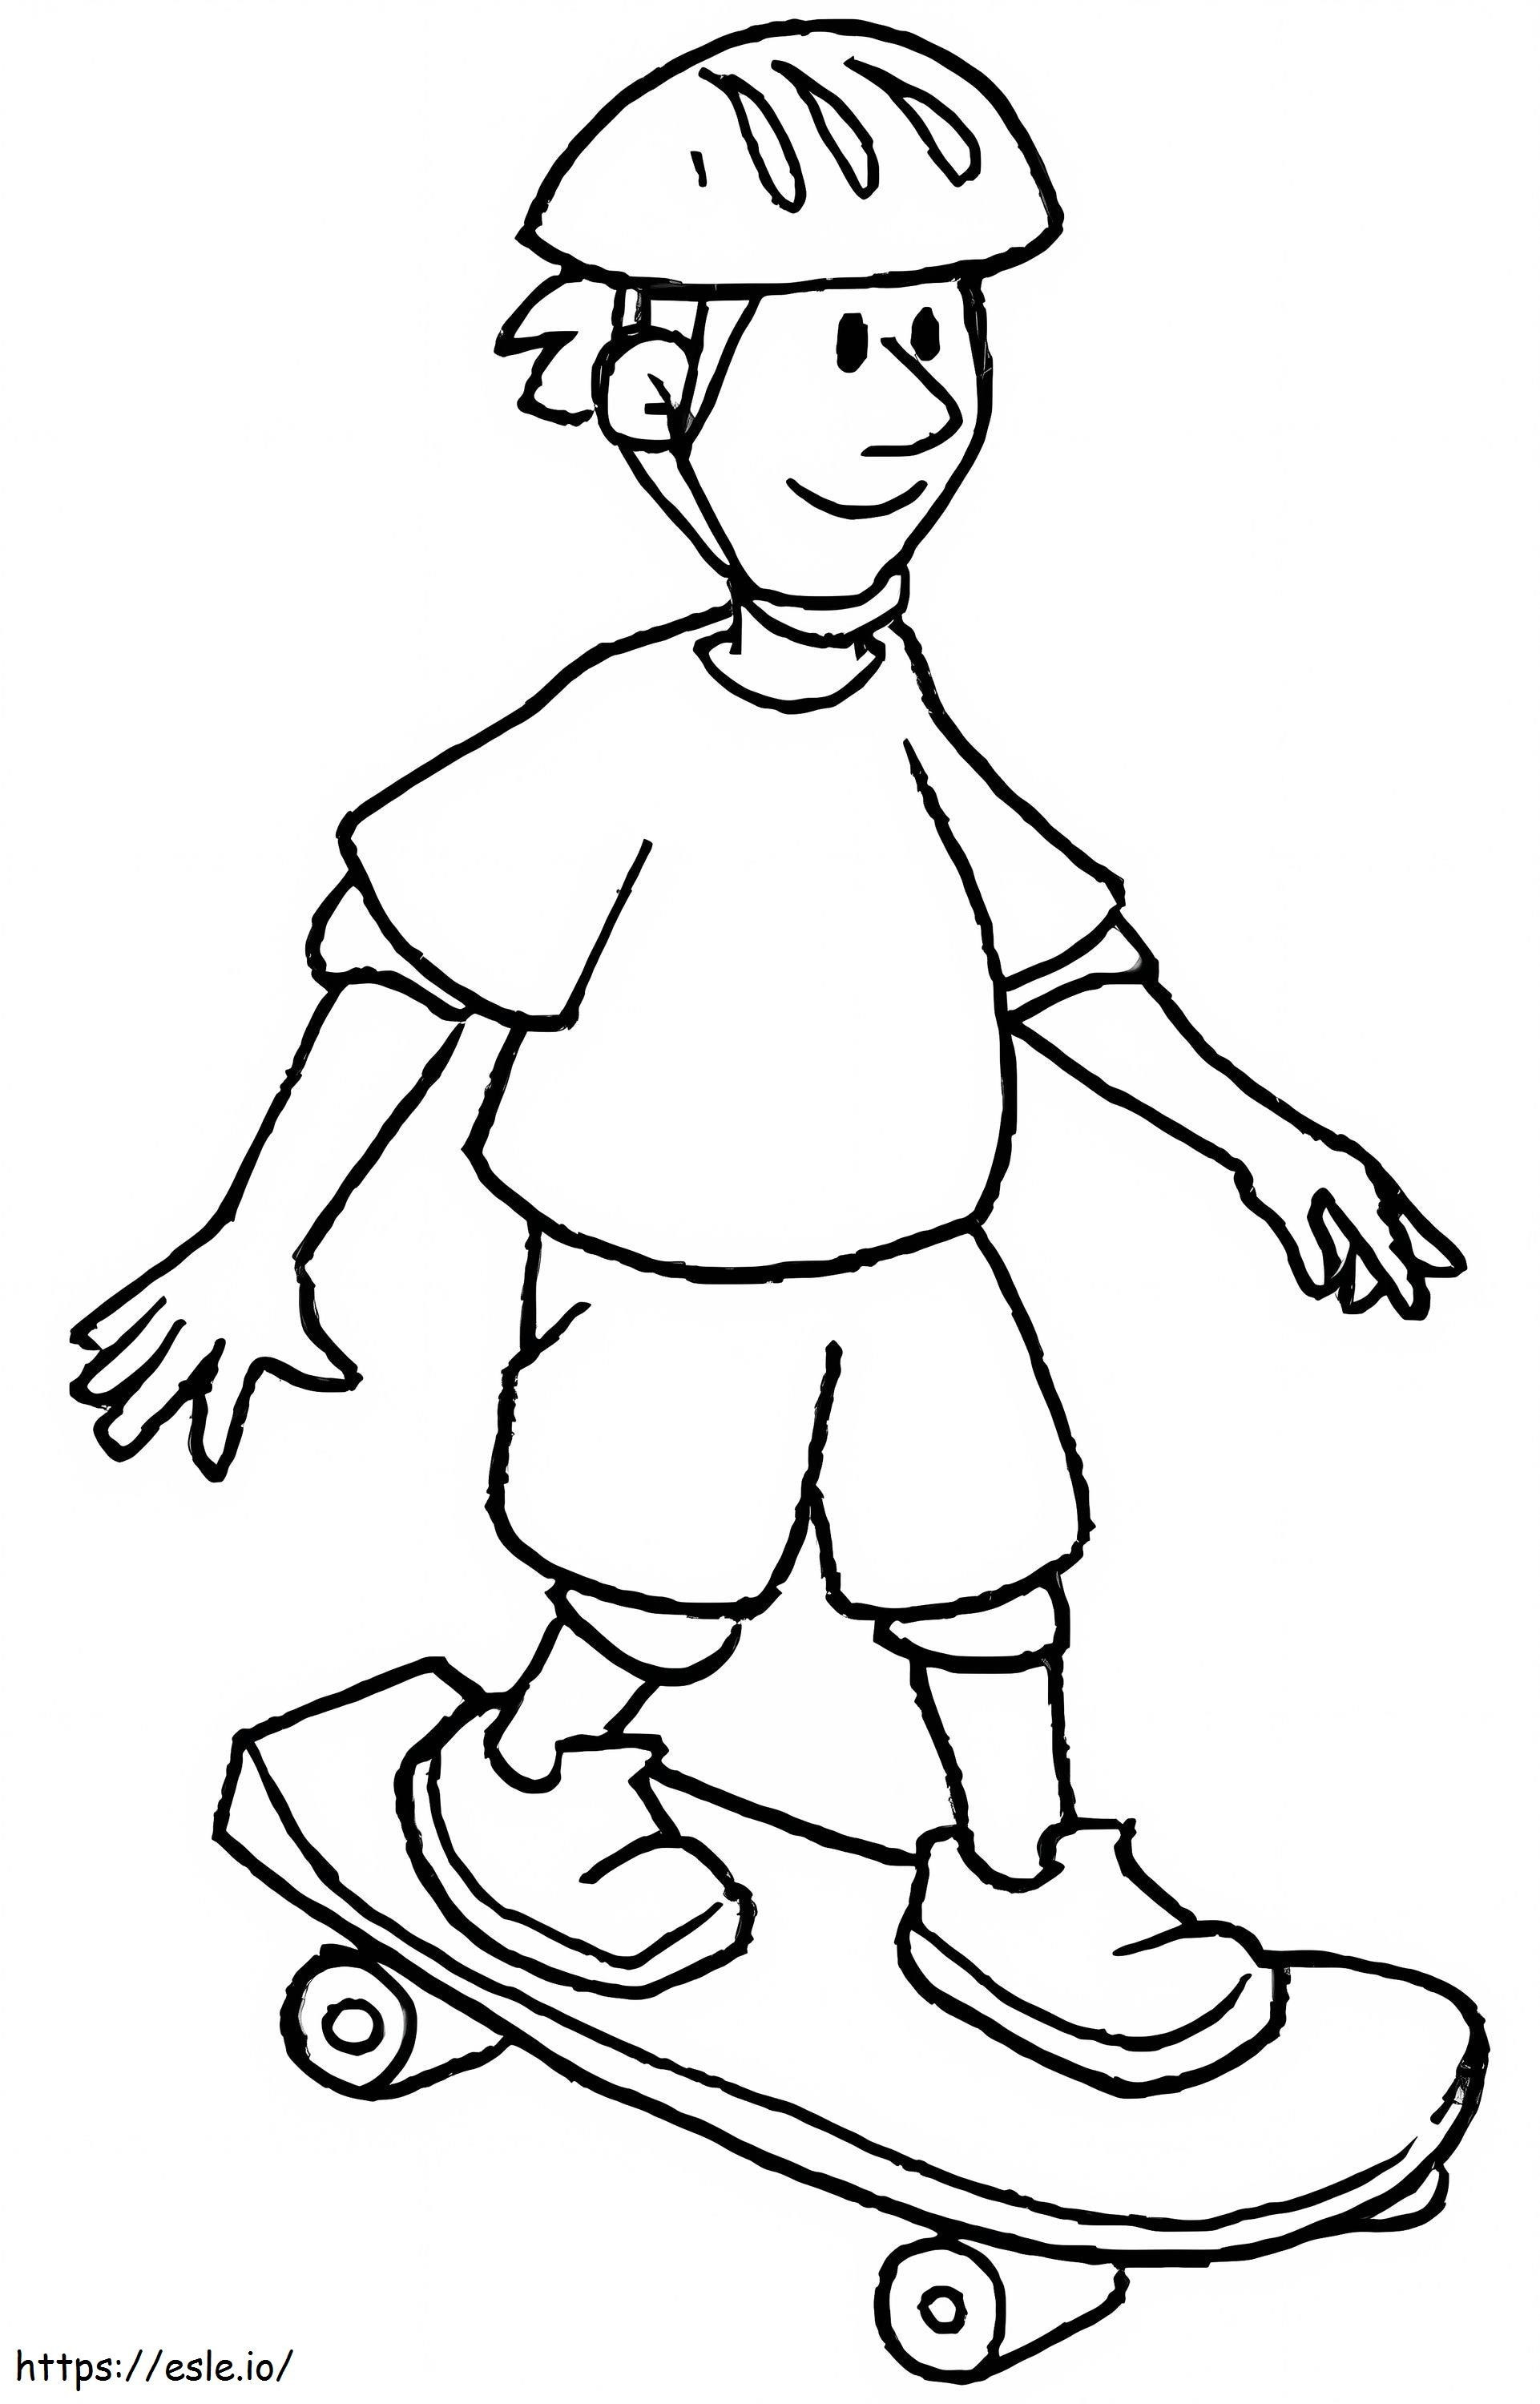 Un ragazzo su uno skateboard da colorare